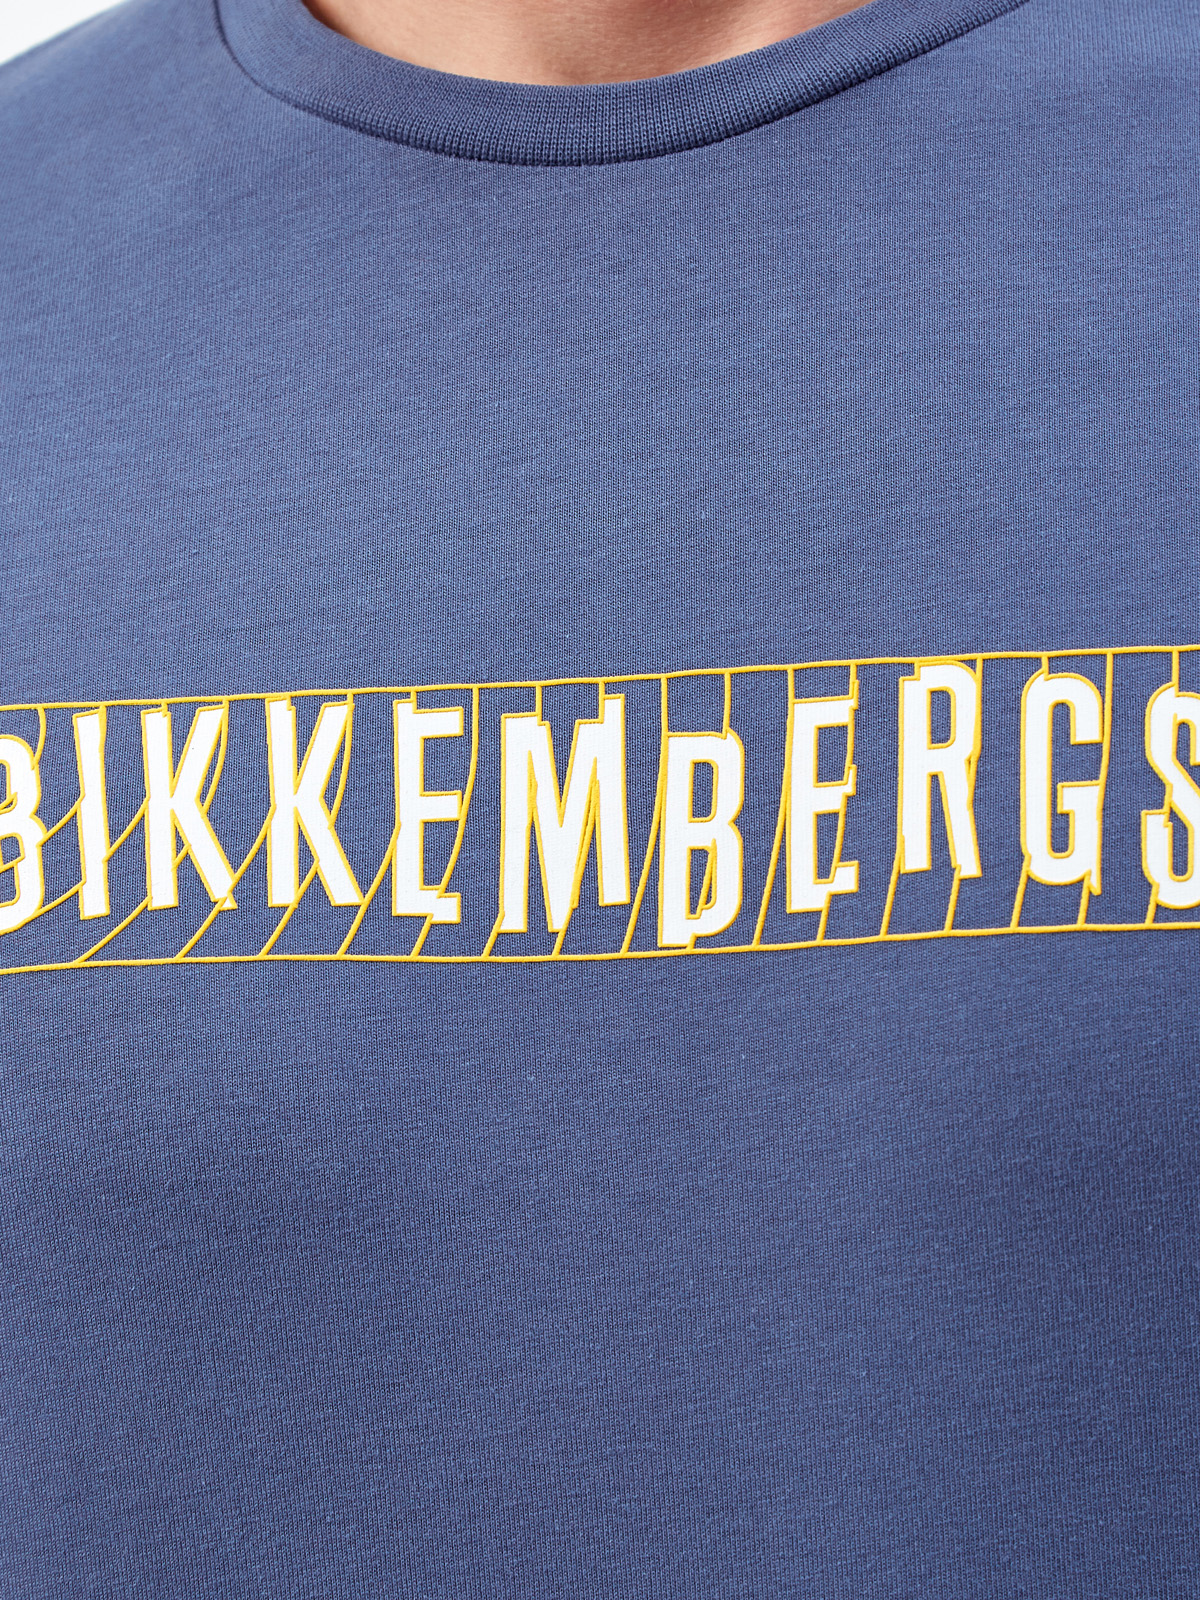 Хлопковая футболка с принтом на передней планке и спинке BIKKEMBERGS, цвет синий, размер S;M;L;XL;2XL;3XL - фото 5